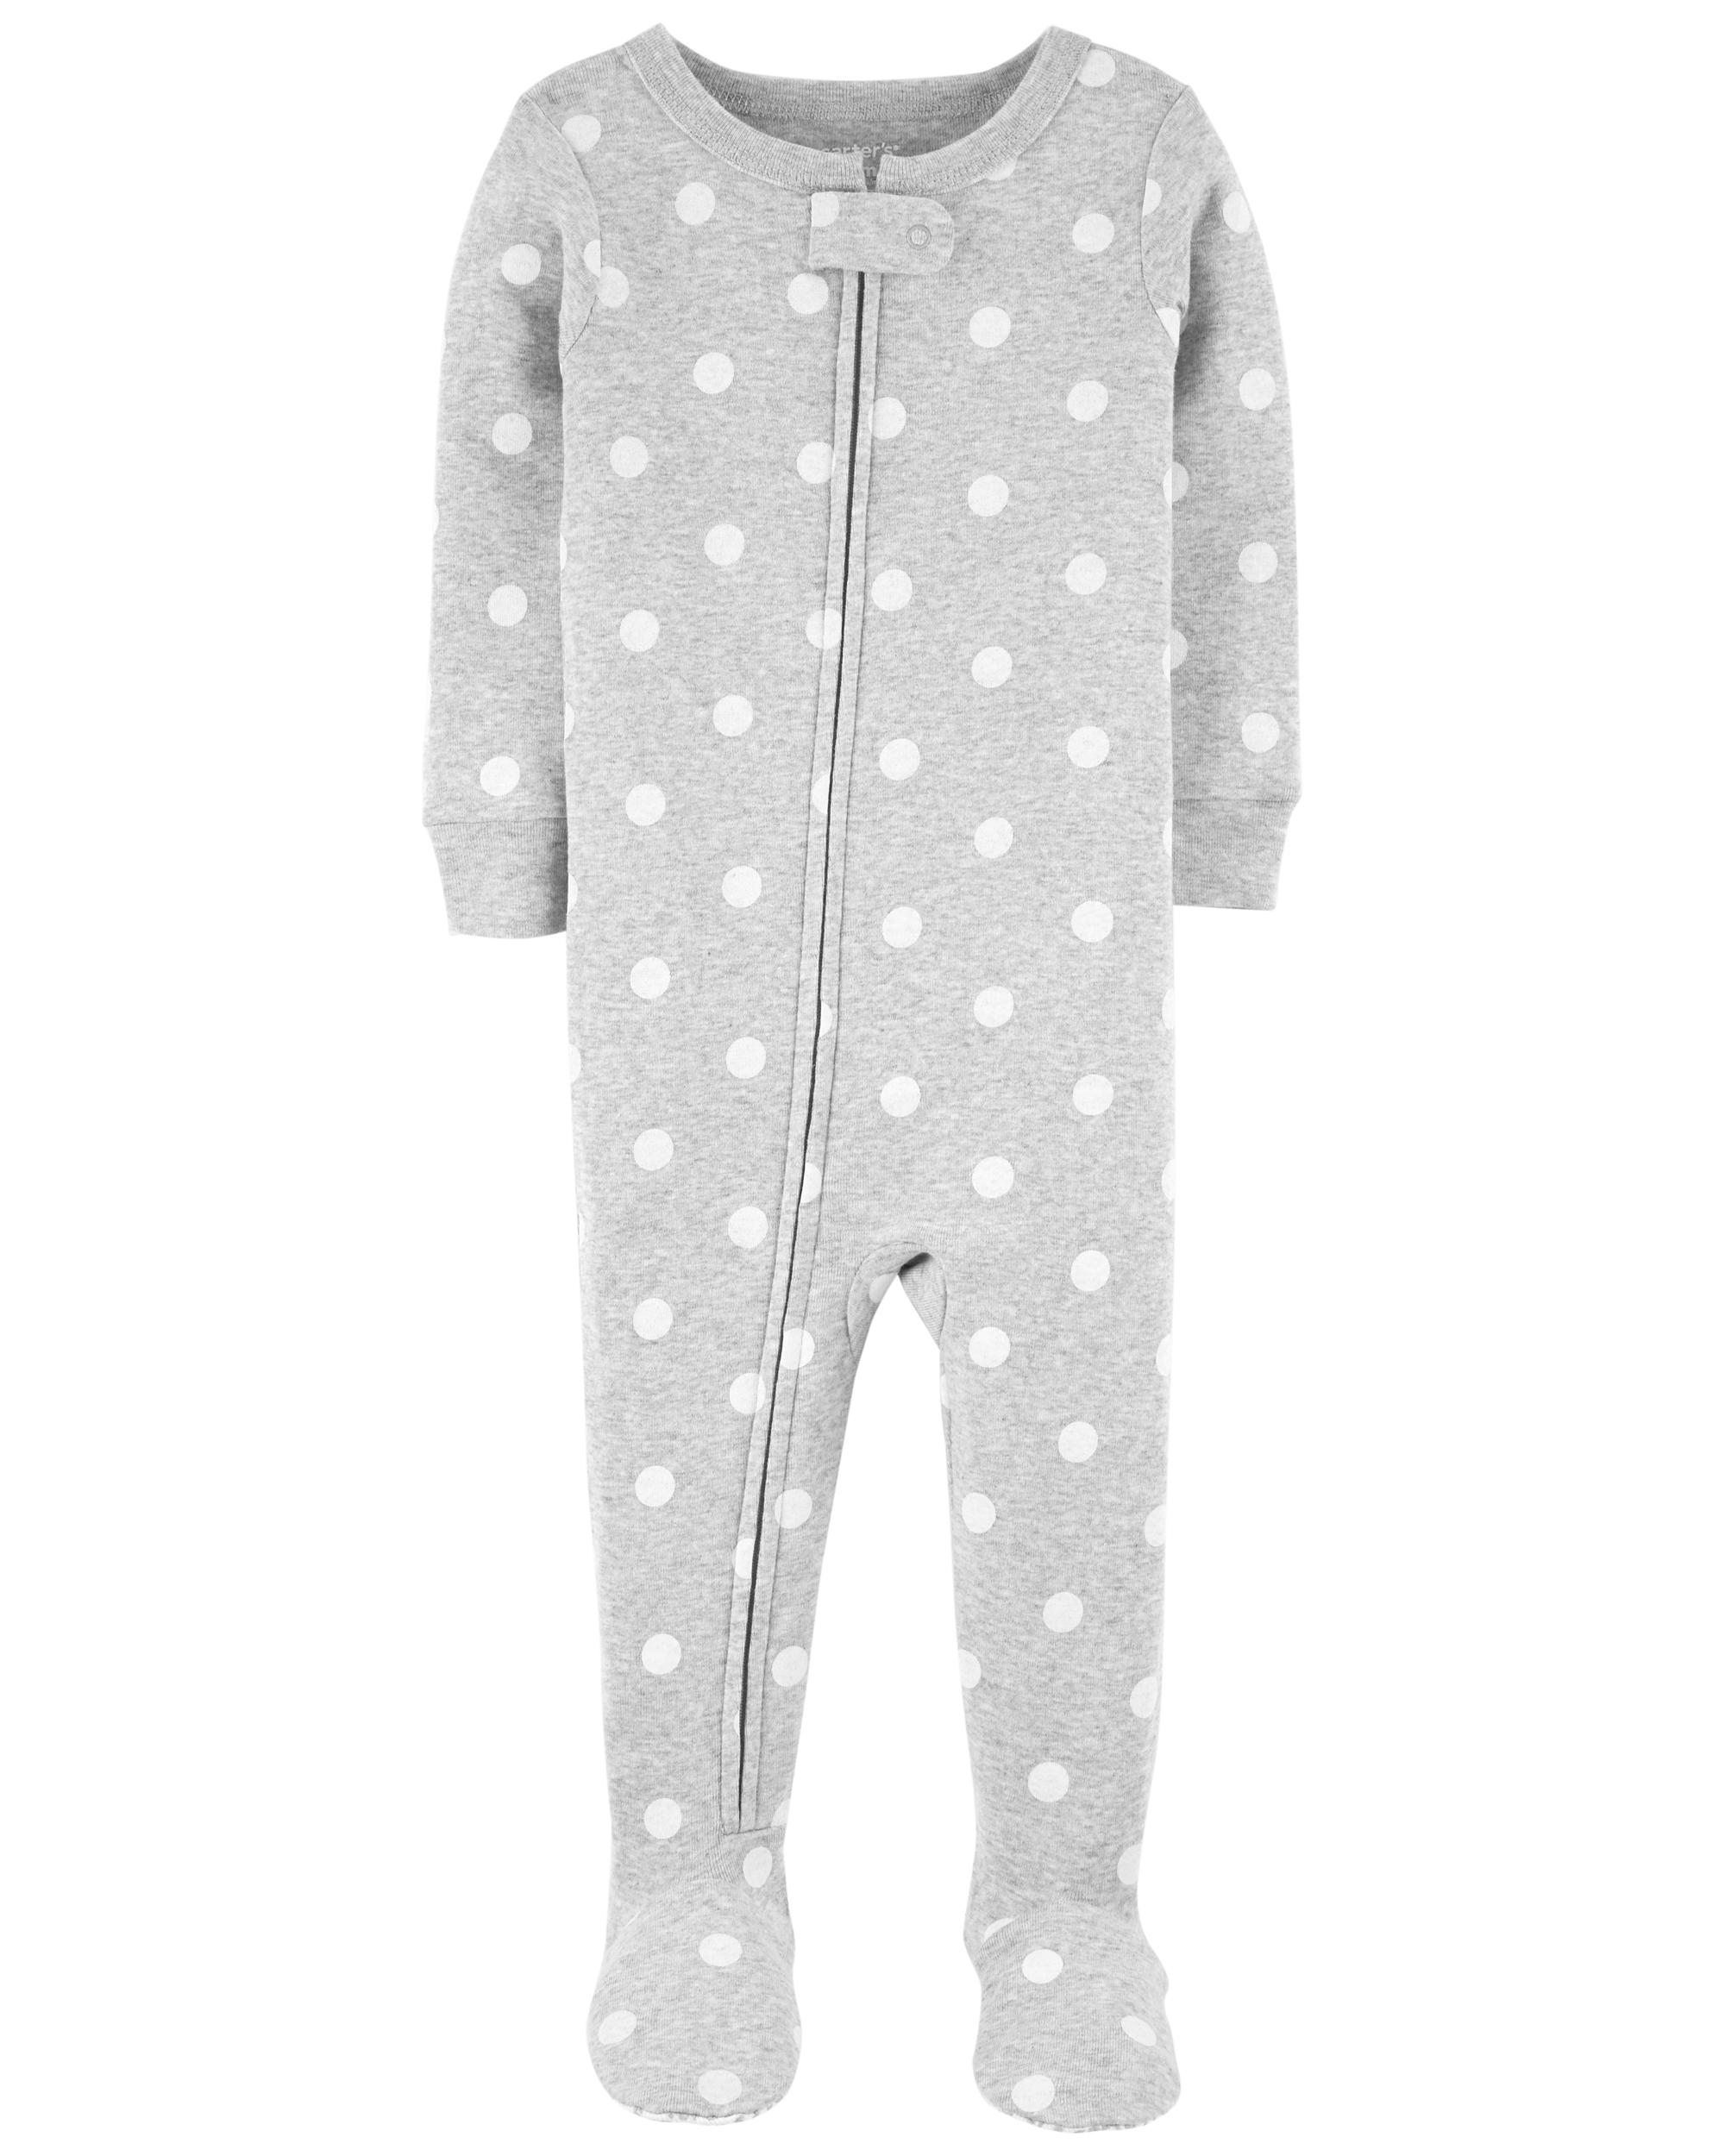 1-Piece Polka Dot Snug Fit Cotton Footie Pyjamas